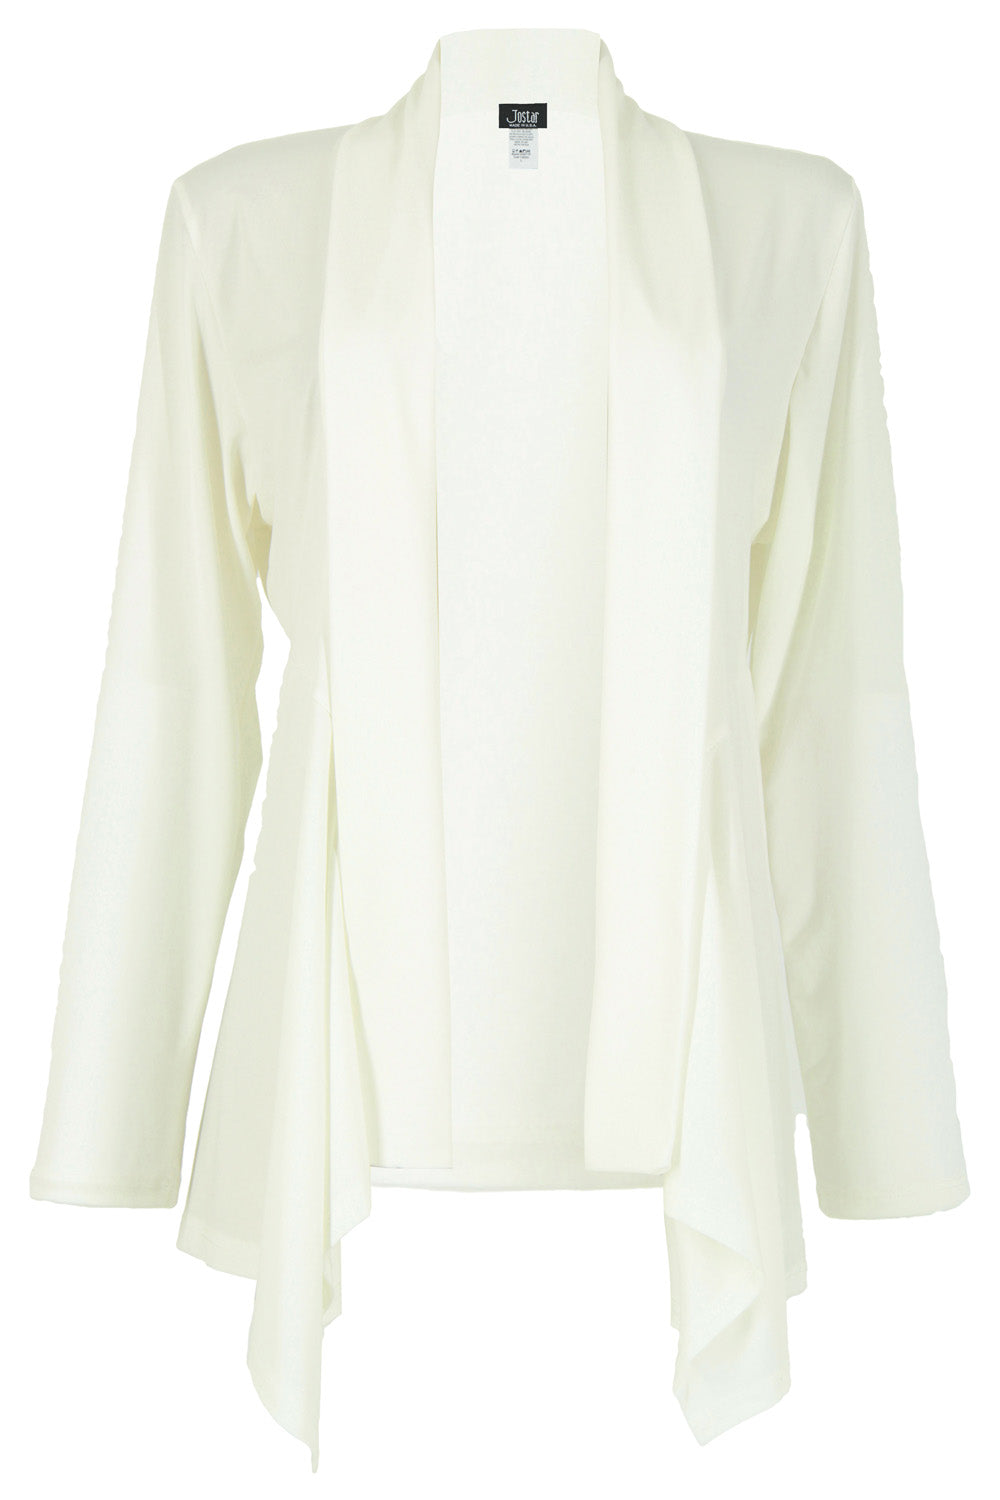 Jostar Women's Mid-cut Jacket Long Sleeve, 428HT-L - Jostar Online